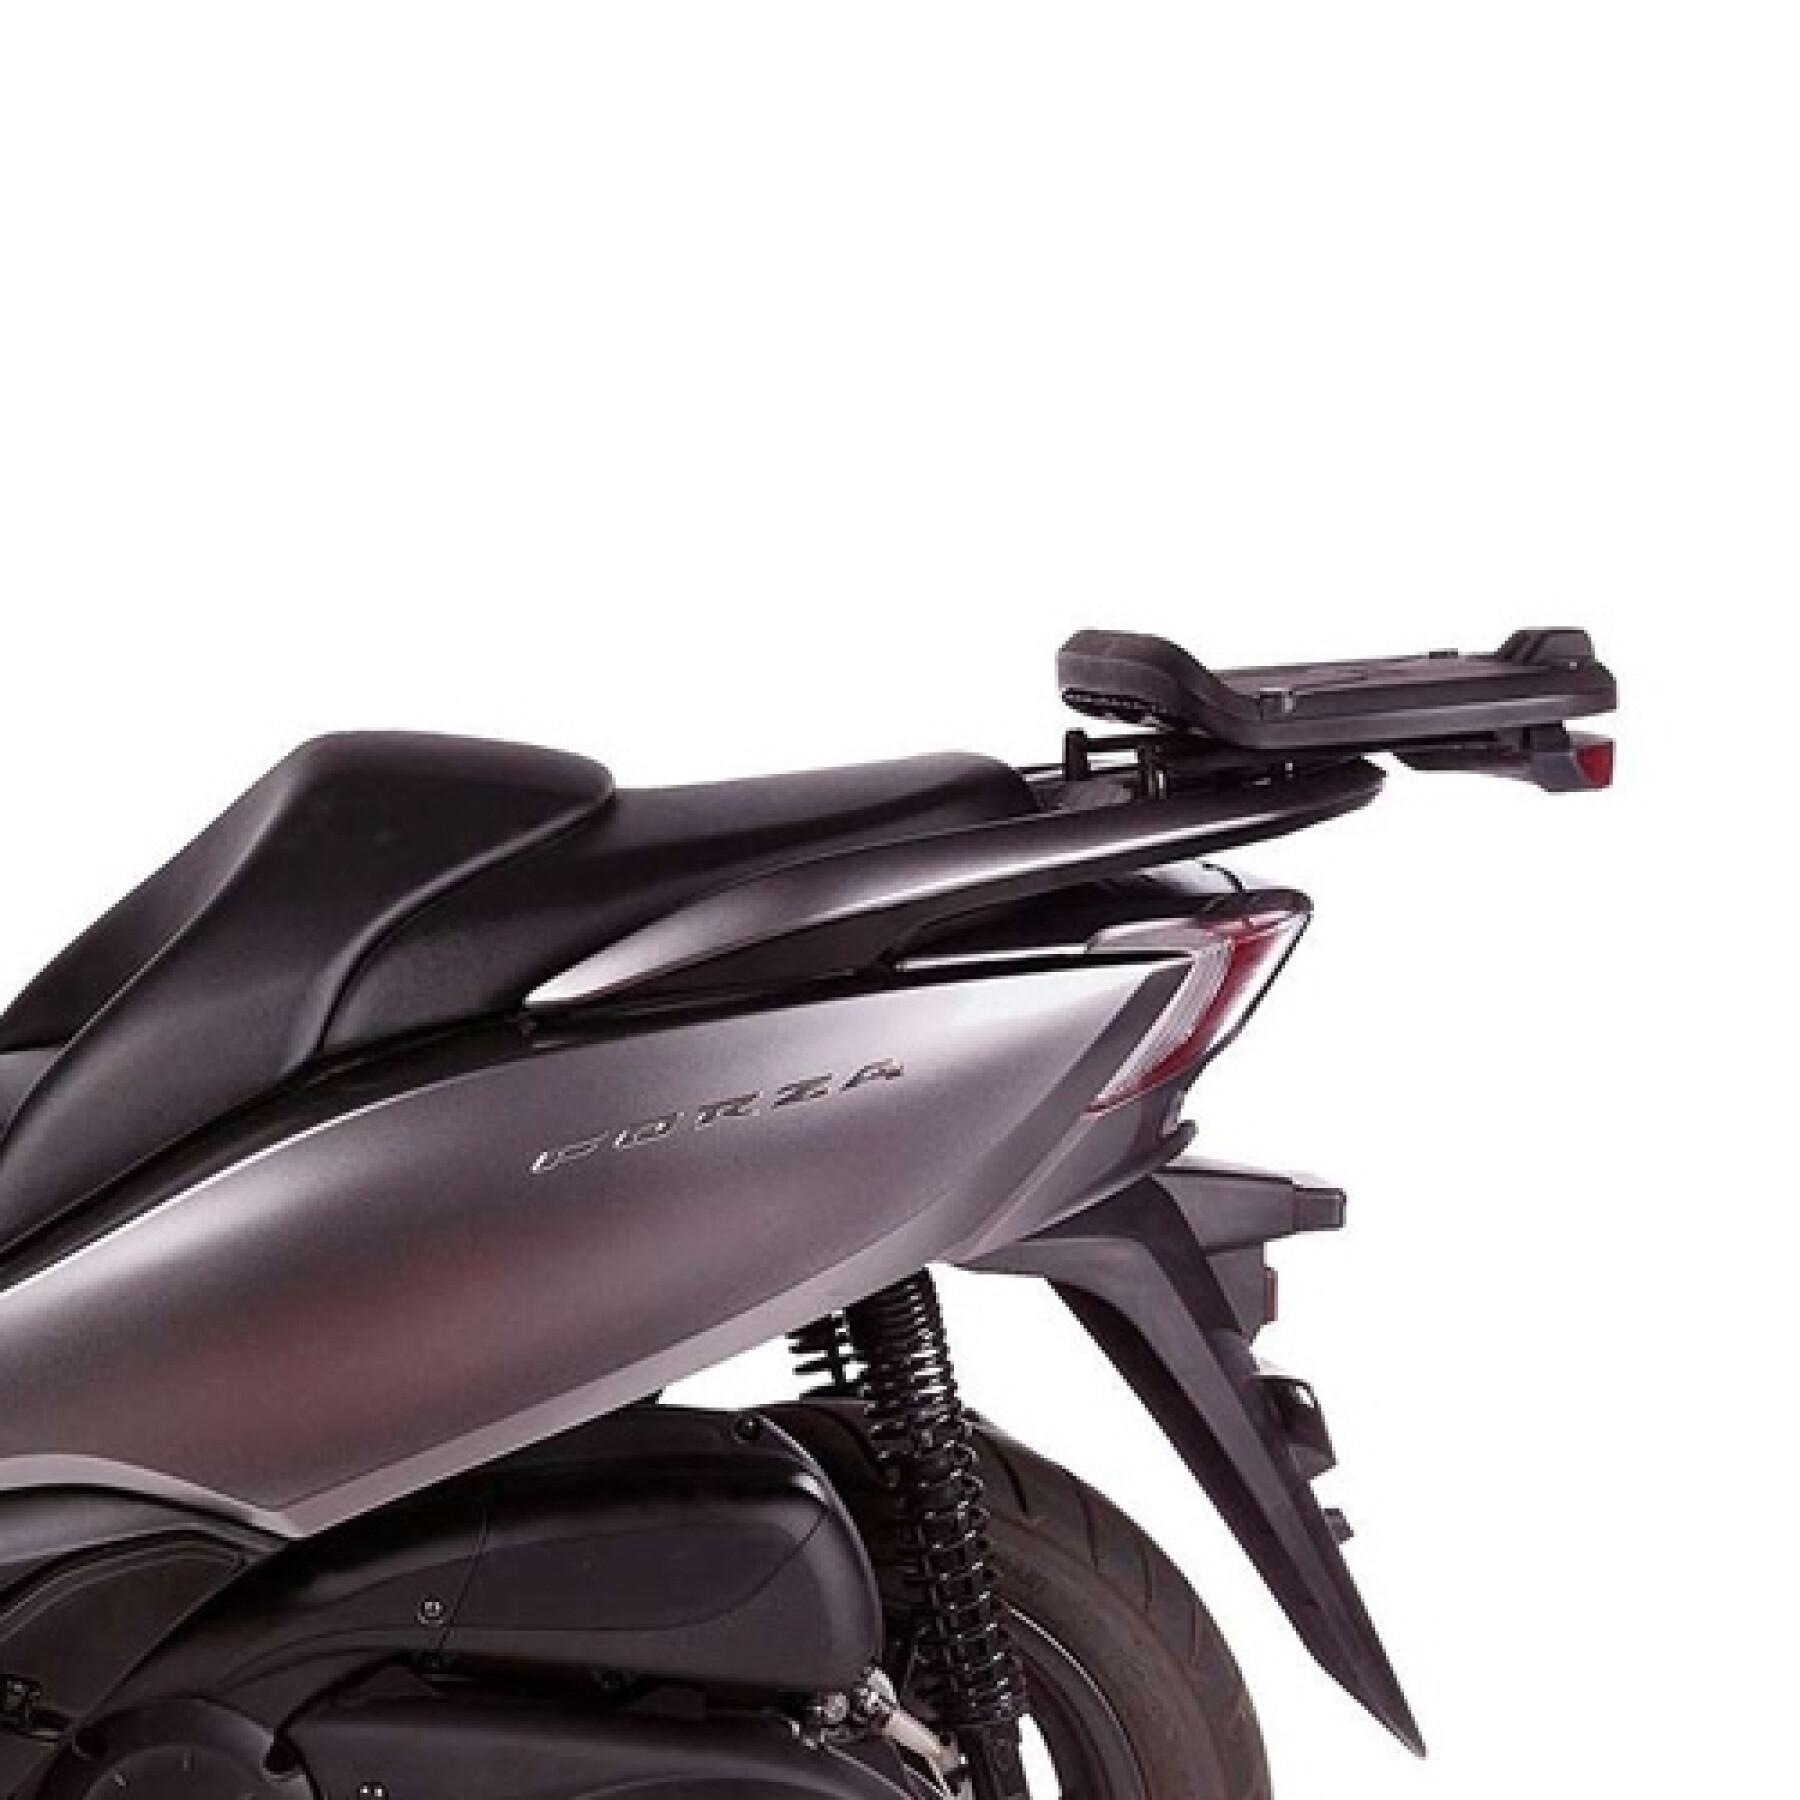 Top case de motocicleta Shad Honda 300 Forza (13 a 17)